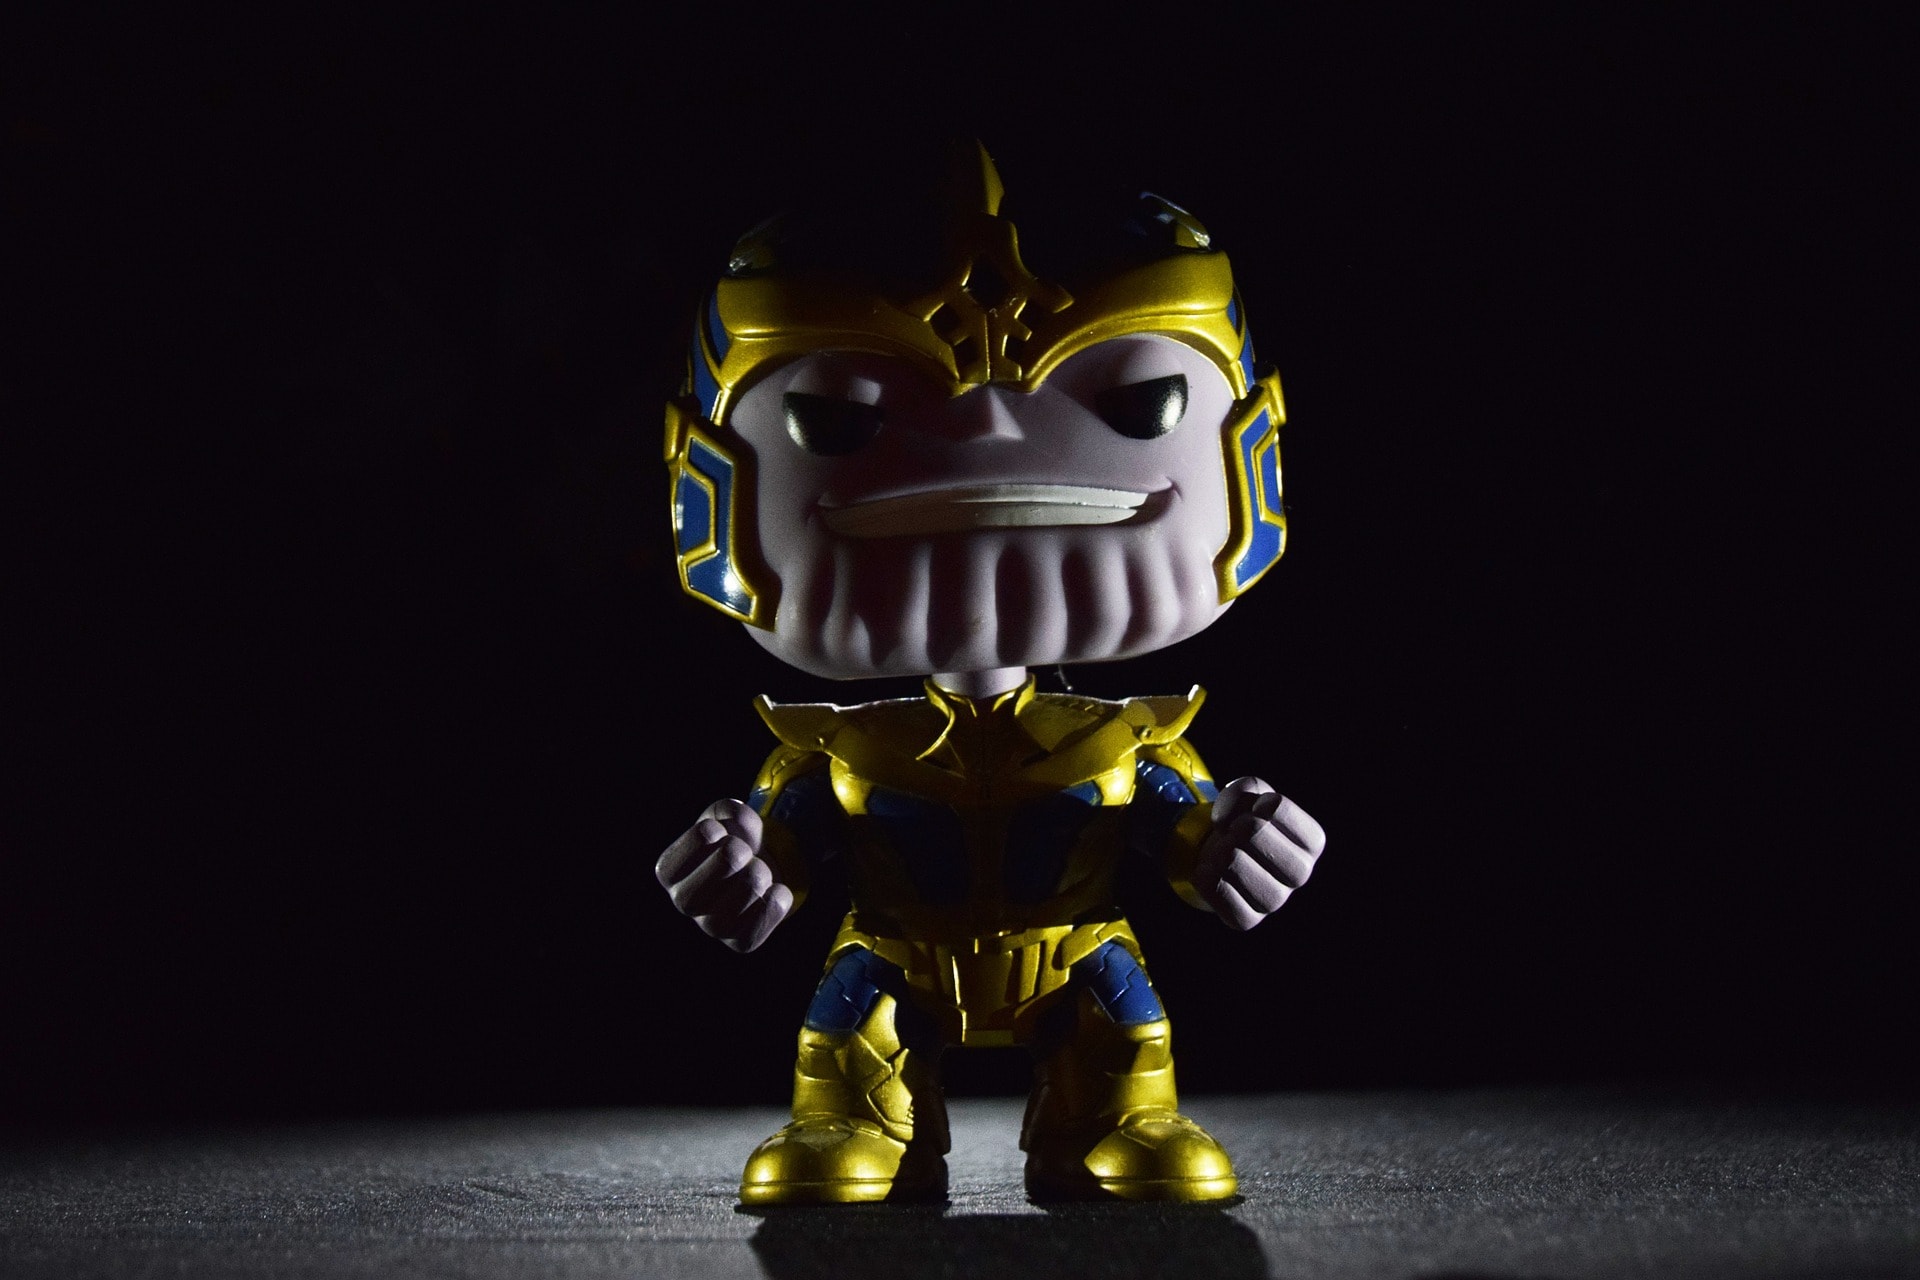 Imagem de um funko do Thanos, um dos vilões da Marvel